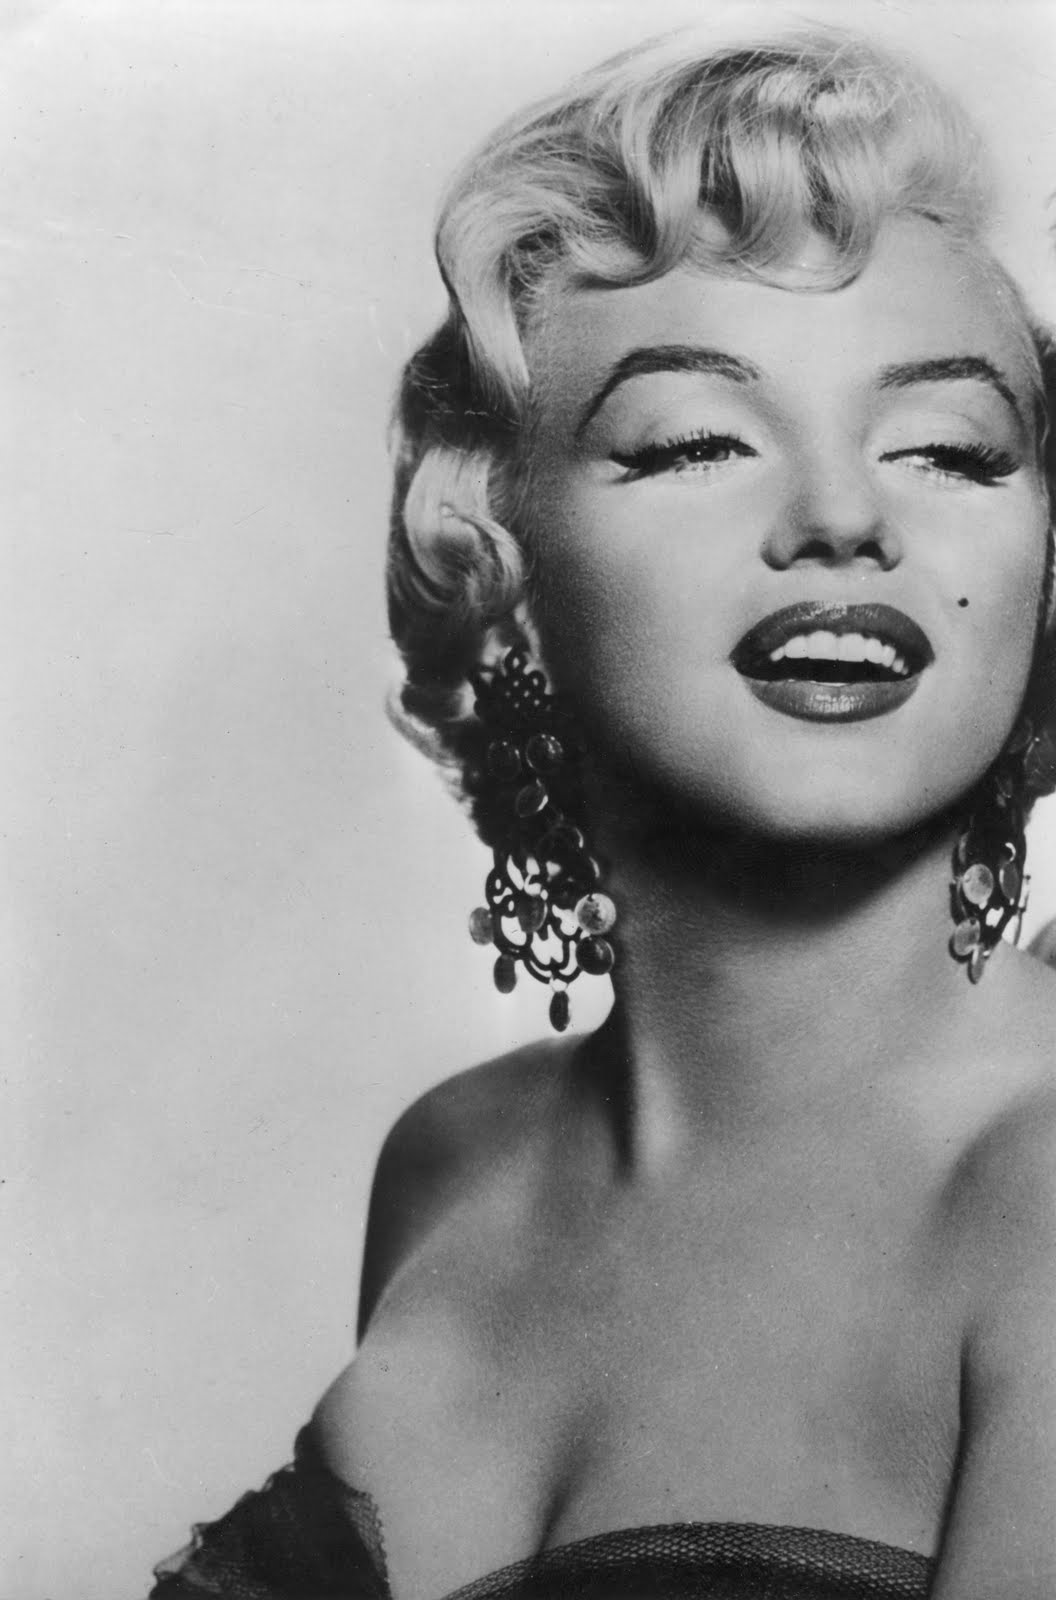 http://1.bp.blogspot.com/-G43JuUSpkas/TbIcDxCgxuI/AAAAAAAAAaM/Yu1zuflTqPY/s1600/Marilyn-Monroe-hi-res-1.jpg